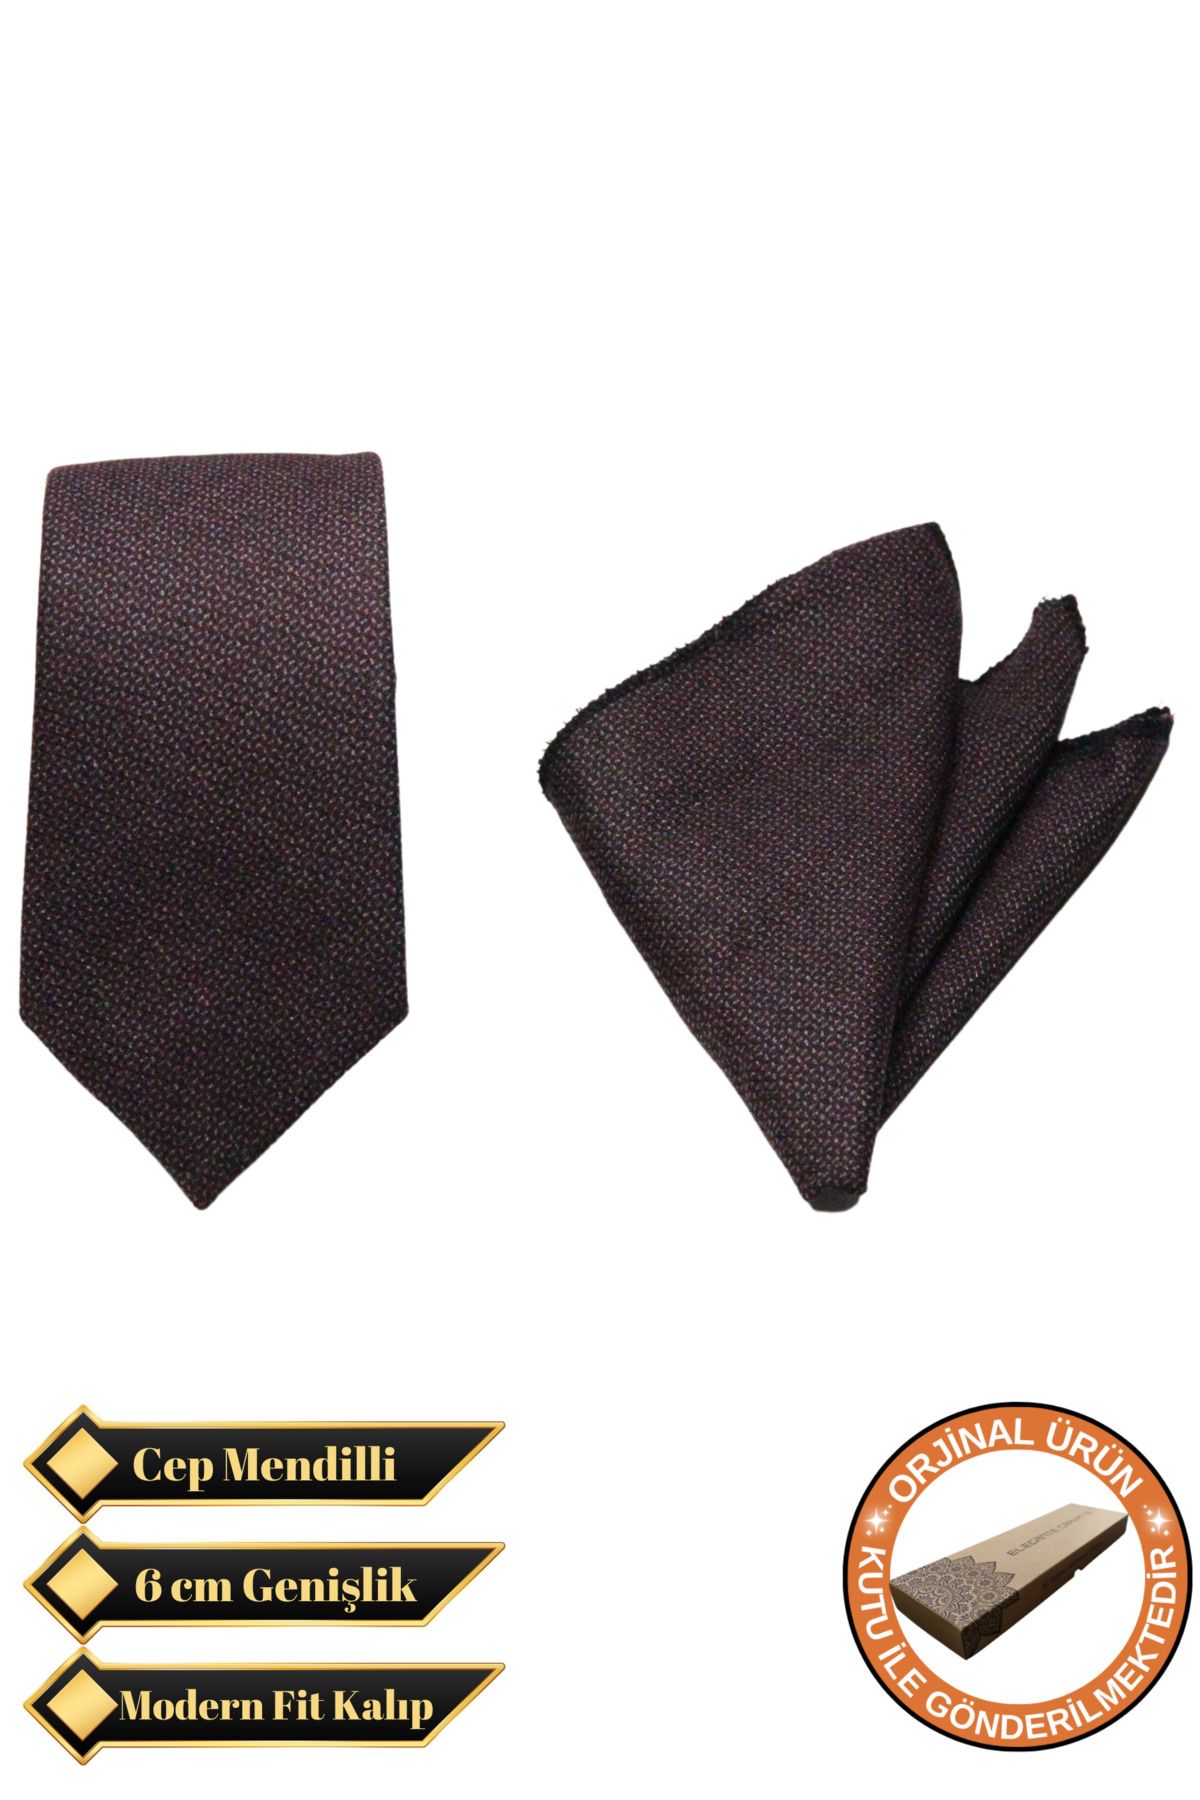 Elegante Cravatte Bordo Renk Pamuklu Kumaş Kravat ve Cep Mendili